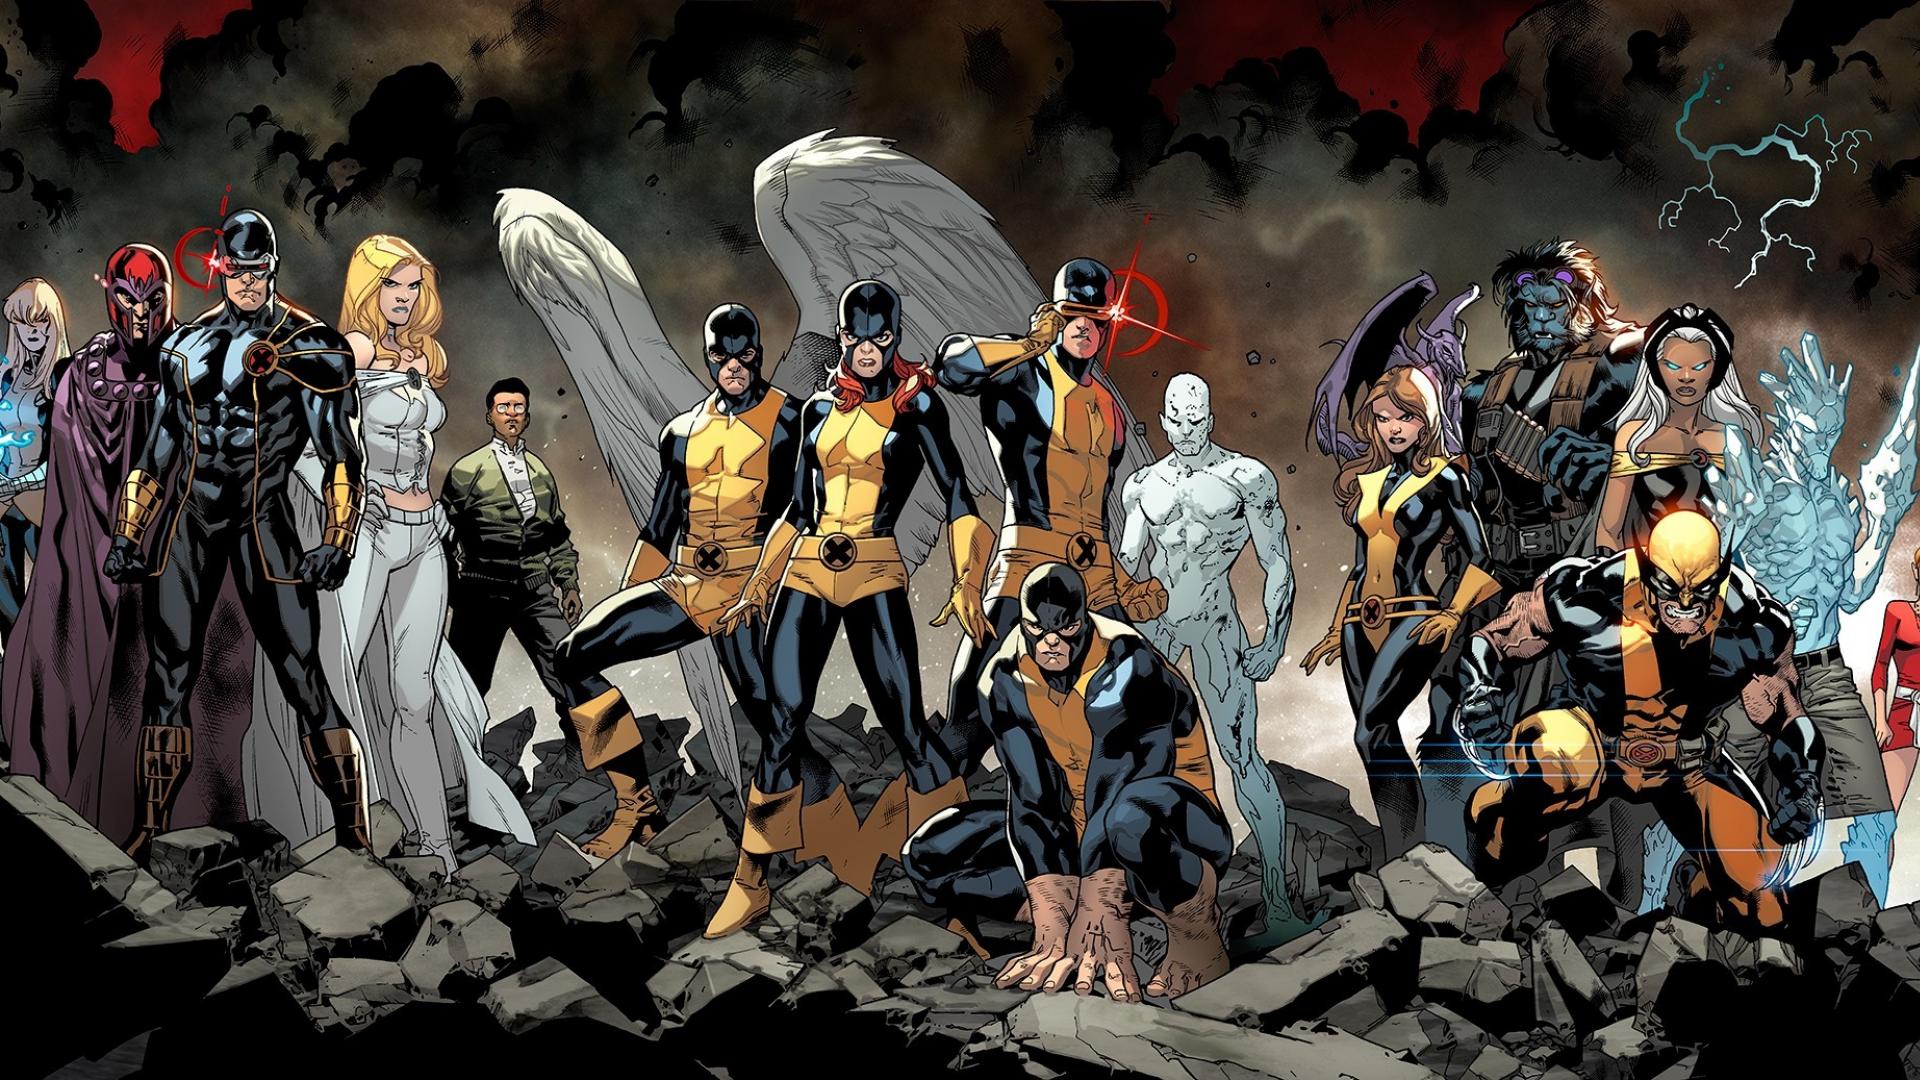 X Men: Bất kỳ fan X Men nào đều không thể bỏ qua bức ảnh này! Hãy xem những siêu anh hùng này chiến đấu chống lại các thế lực xấu xa để bảo vệ thế giới.